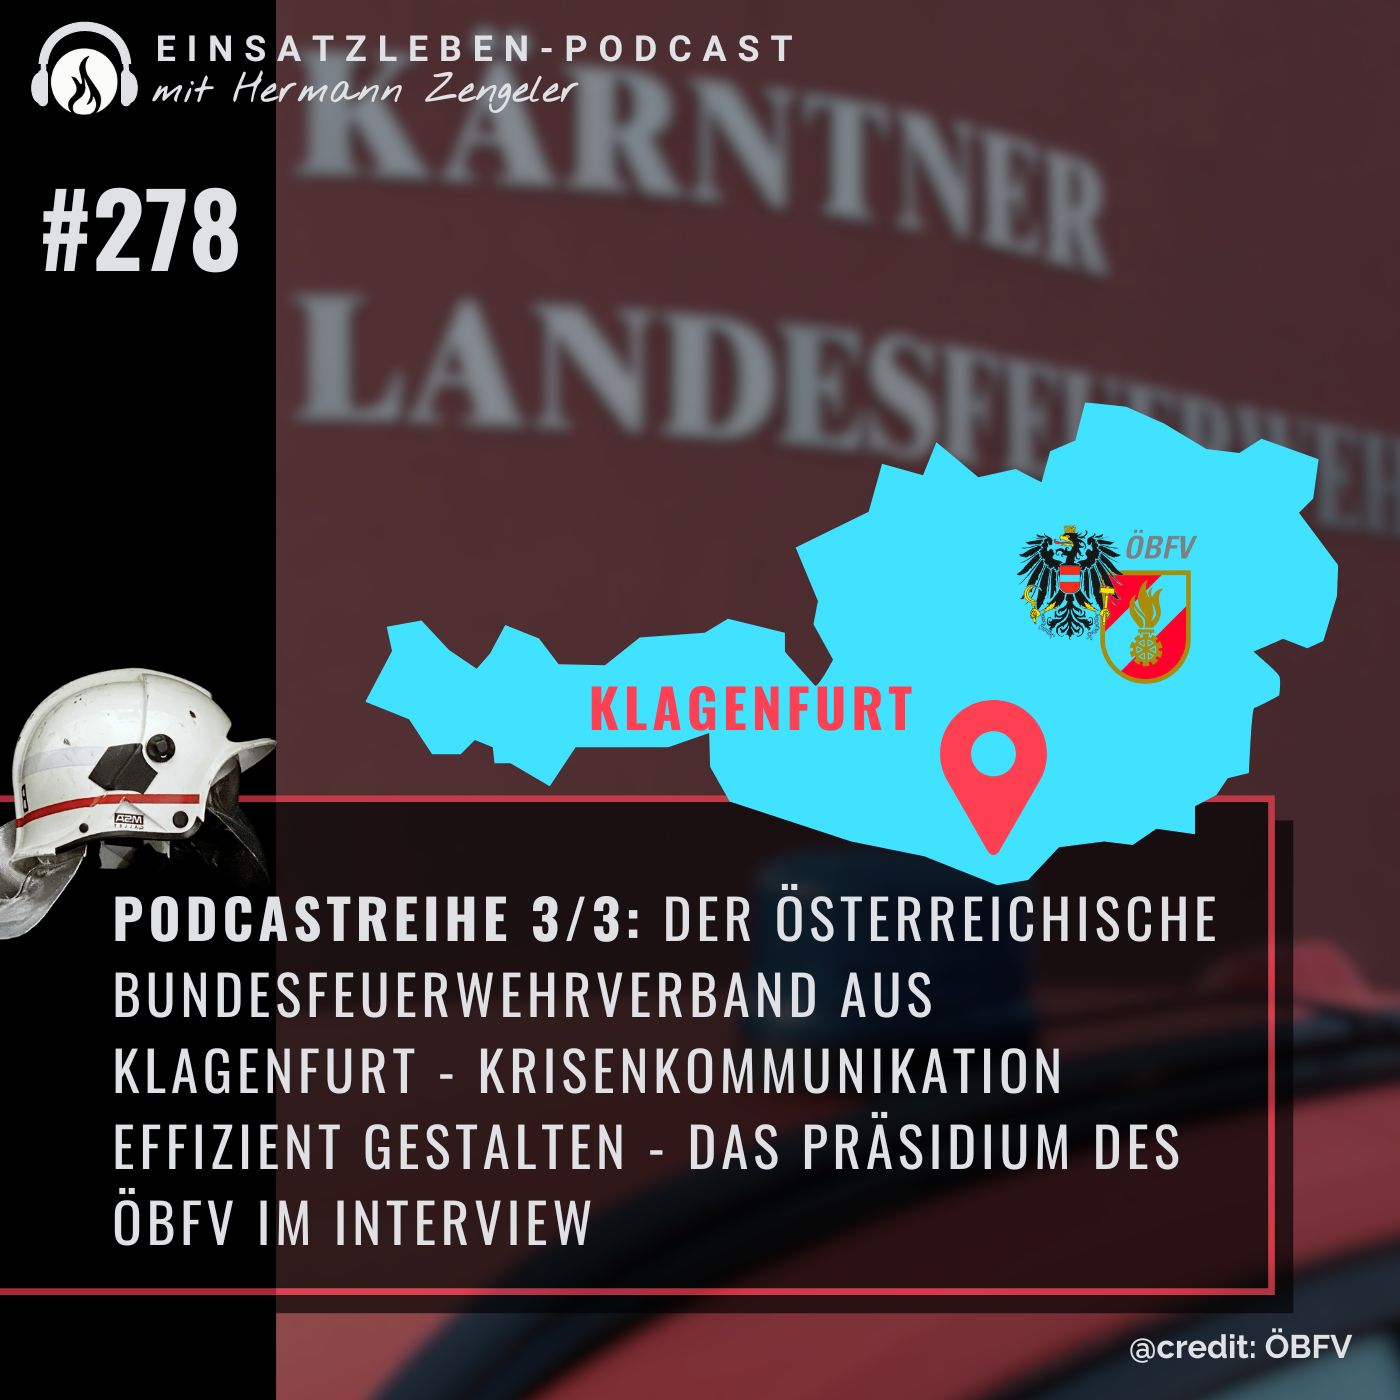 Der Österreichische Bundesfeuerwehrverband - Krisenkommunikation effizient gestalten aus Klagenfurt